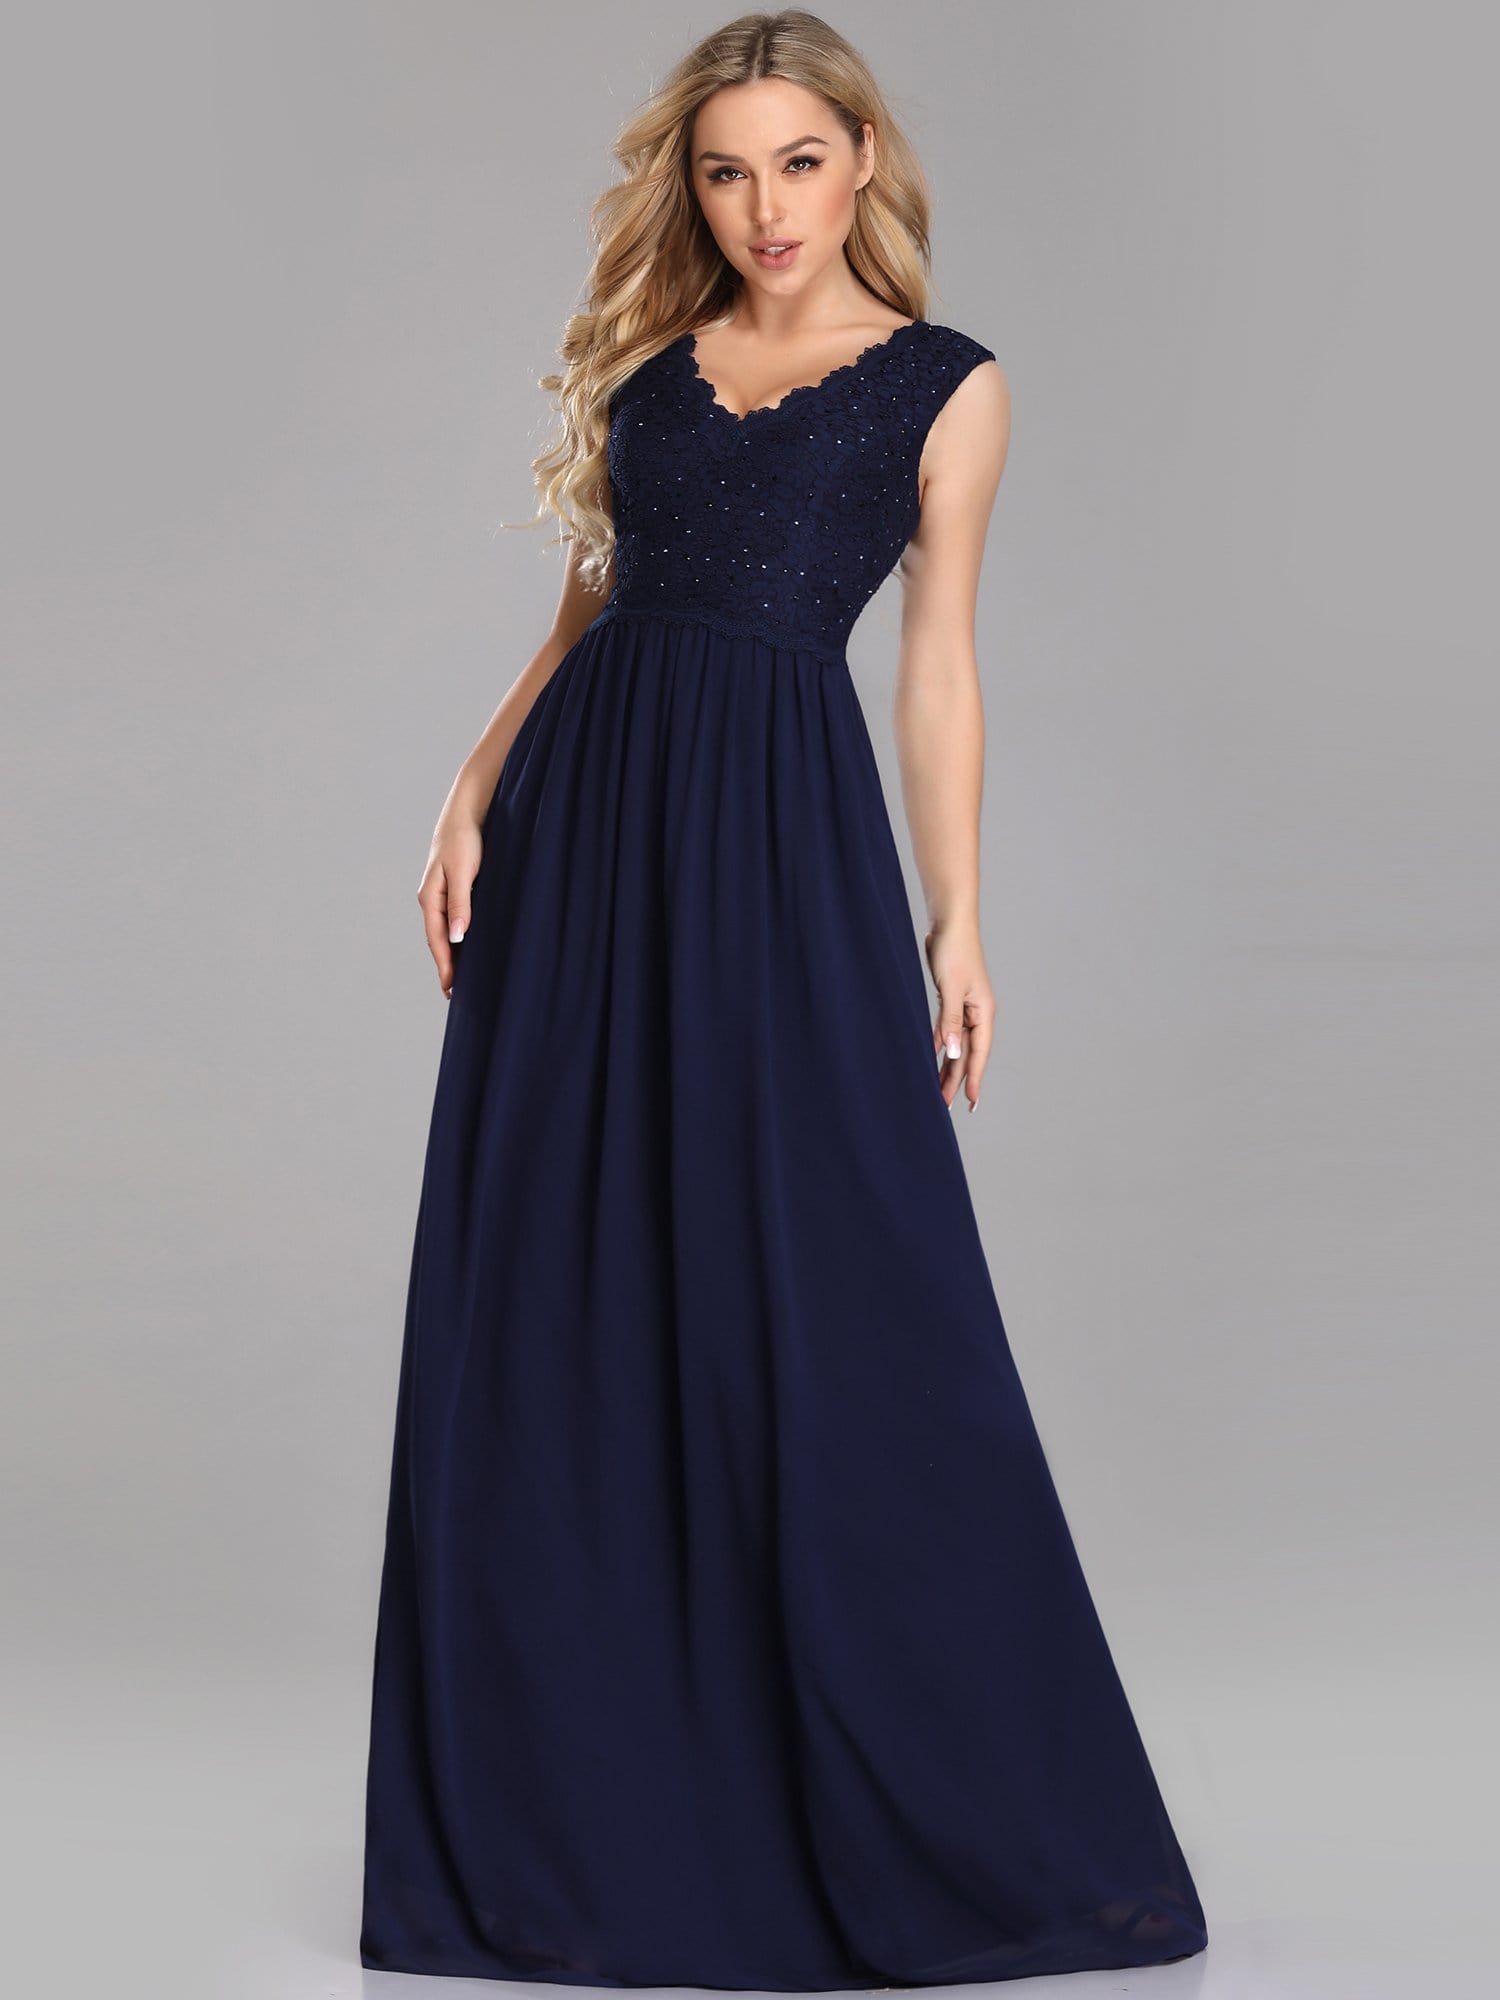 COLOR=Navy Blue | Long Chiffon Evening Dress With Lace Bodice & V Neck-Navy Blue 1